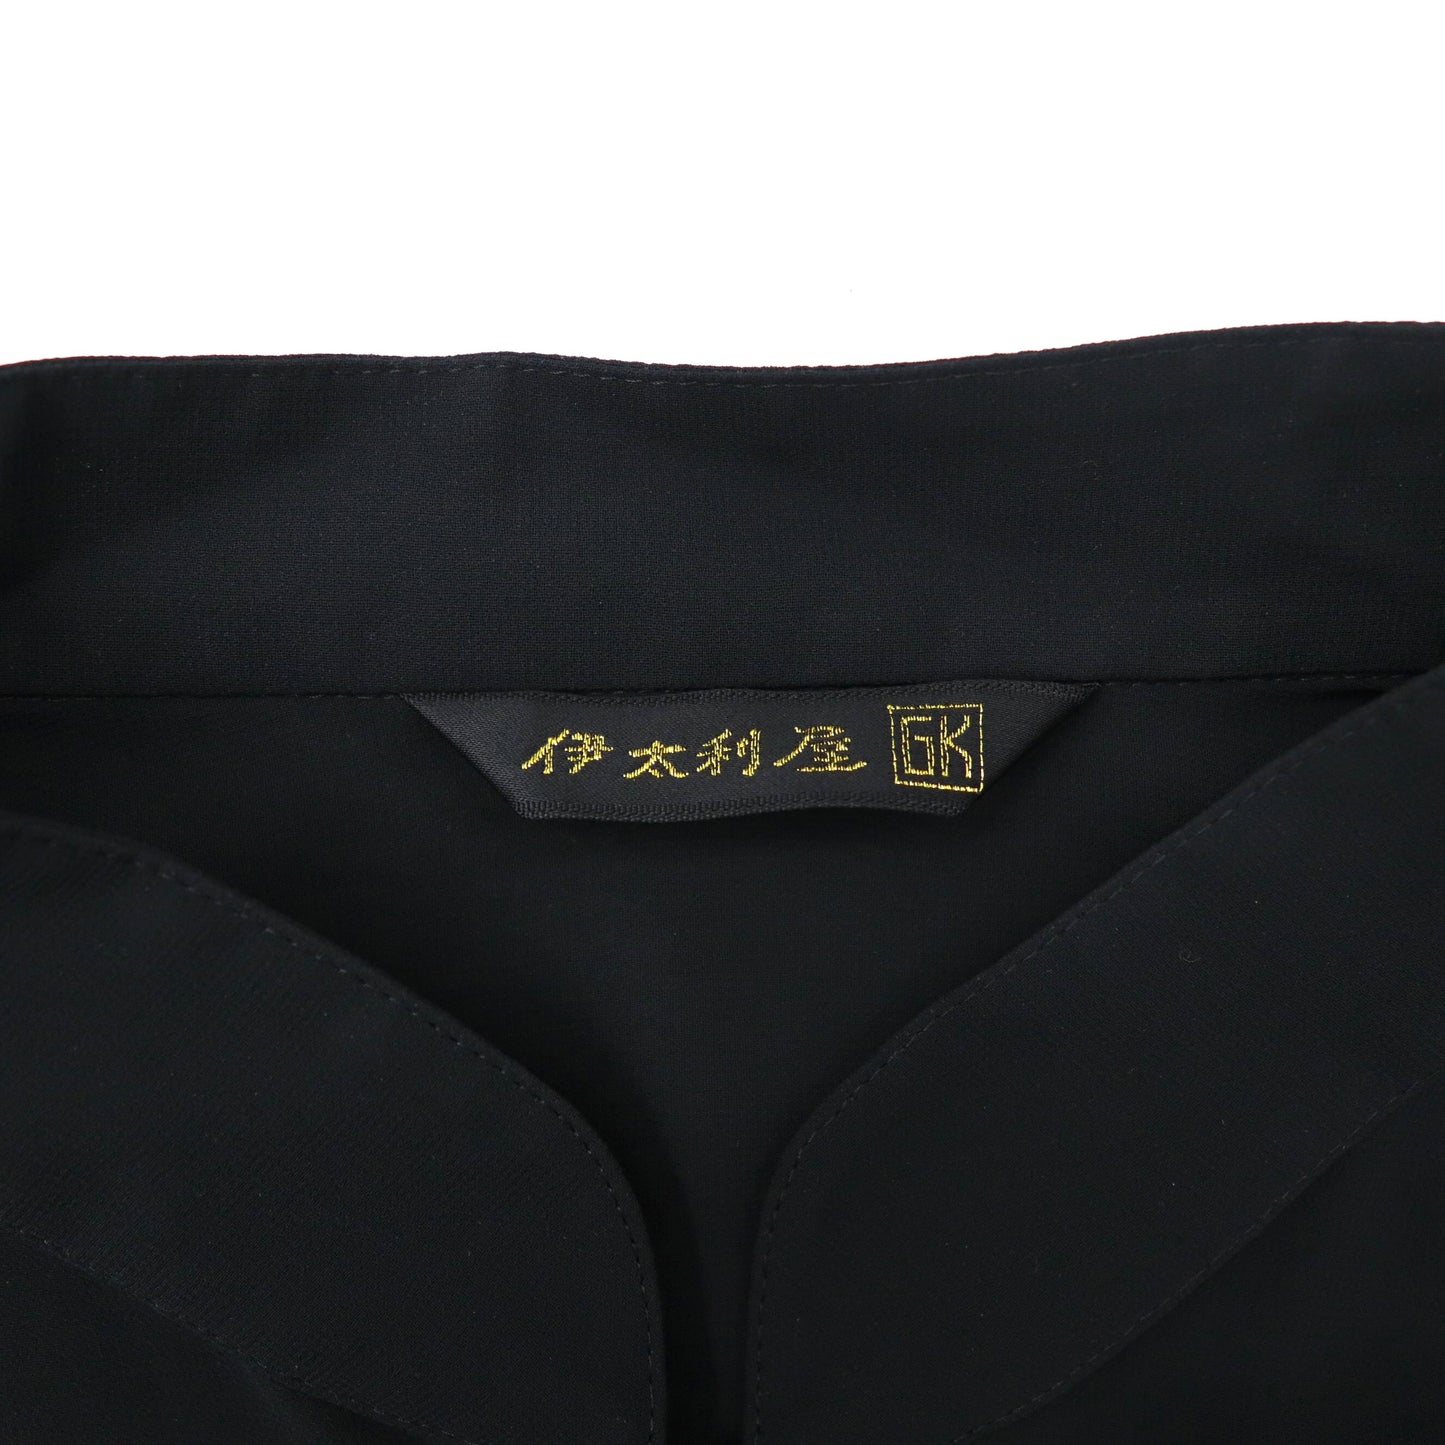 伊太利屋 シースルー オーバーシャツ 11 ブラック ポリエステル La Moda GOJI 日本製